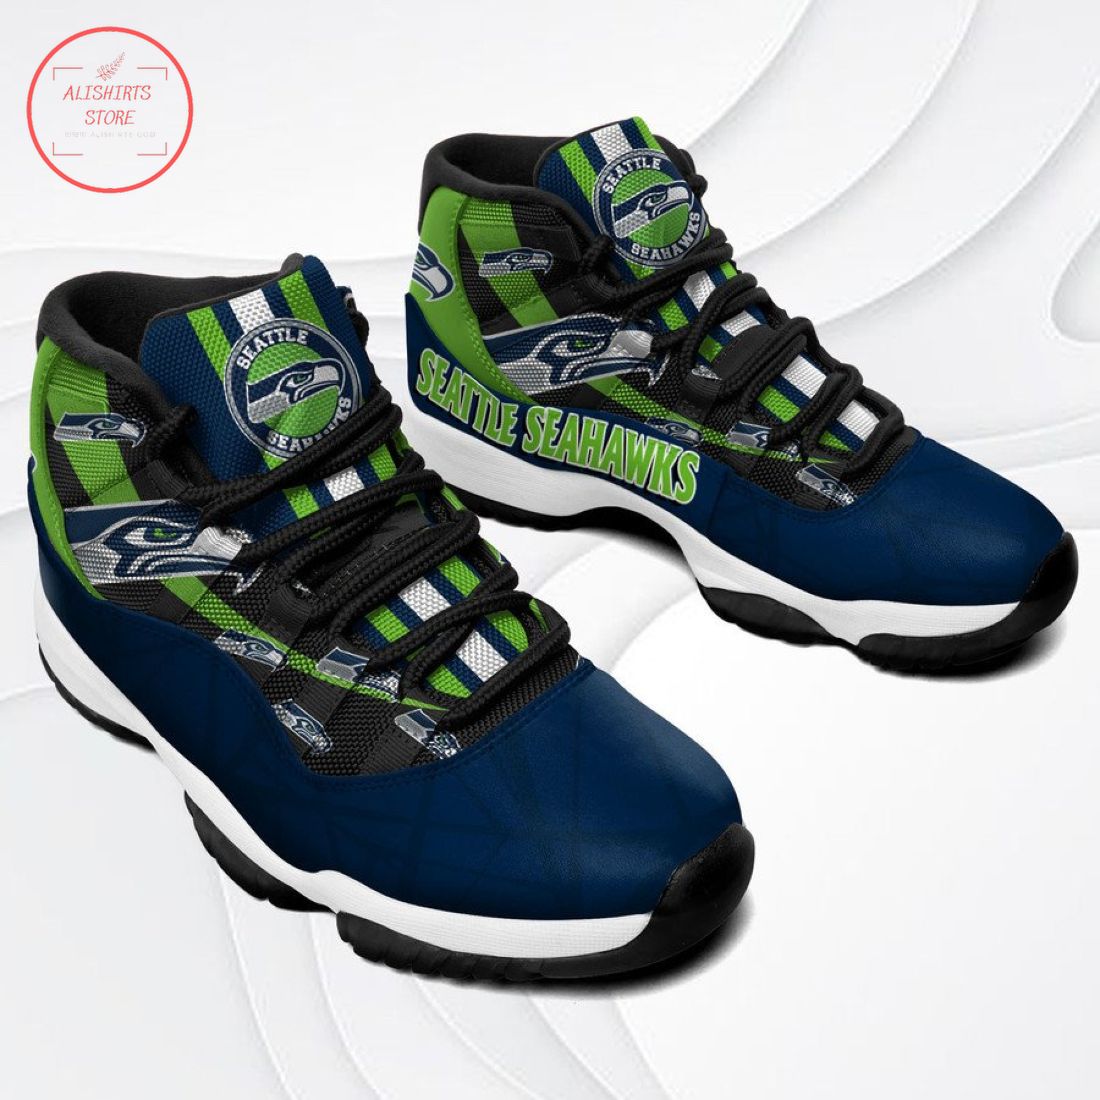 NFL Seattle Seahawks New Air Jordan 11 Sneakers Shoes